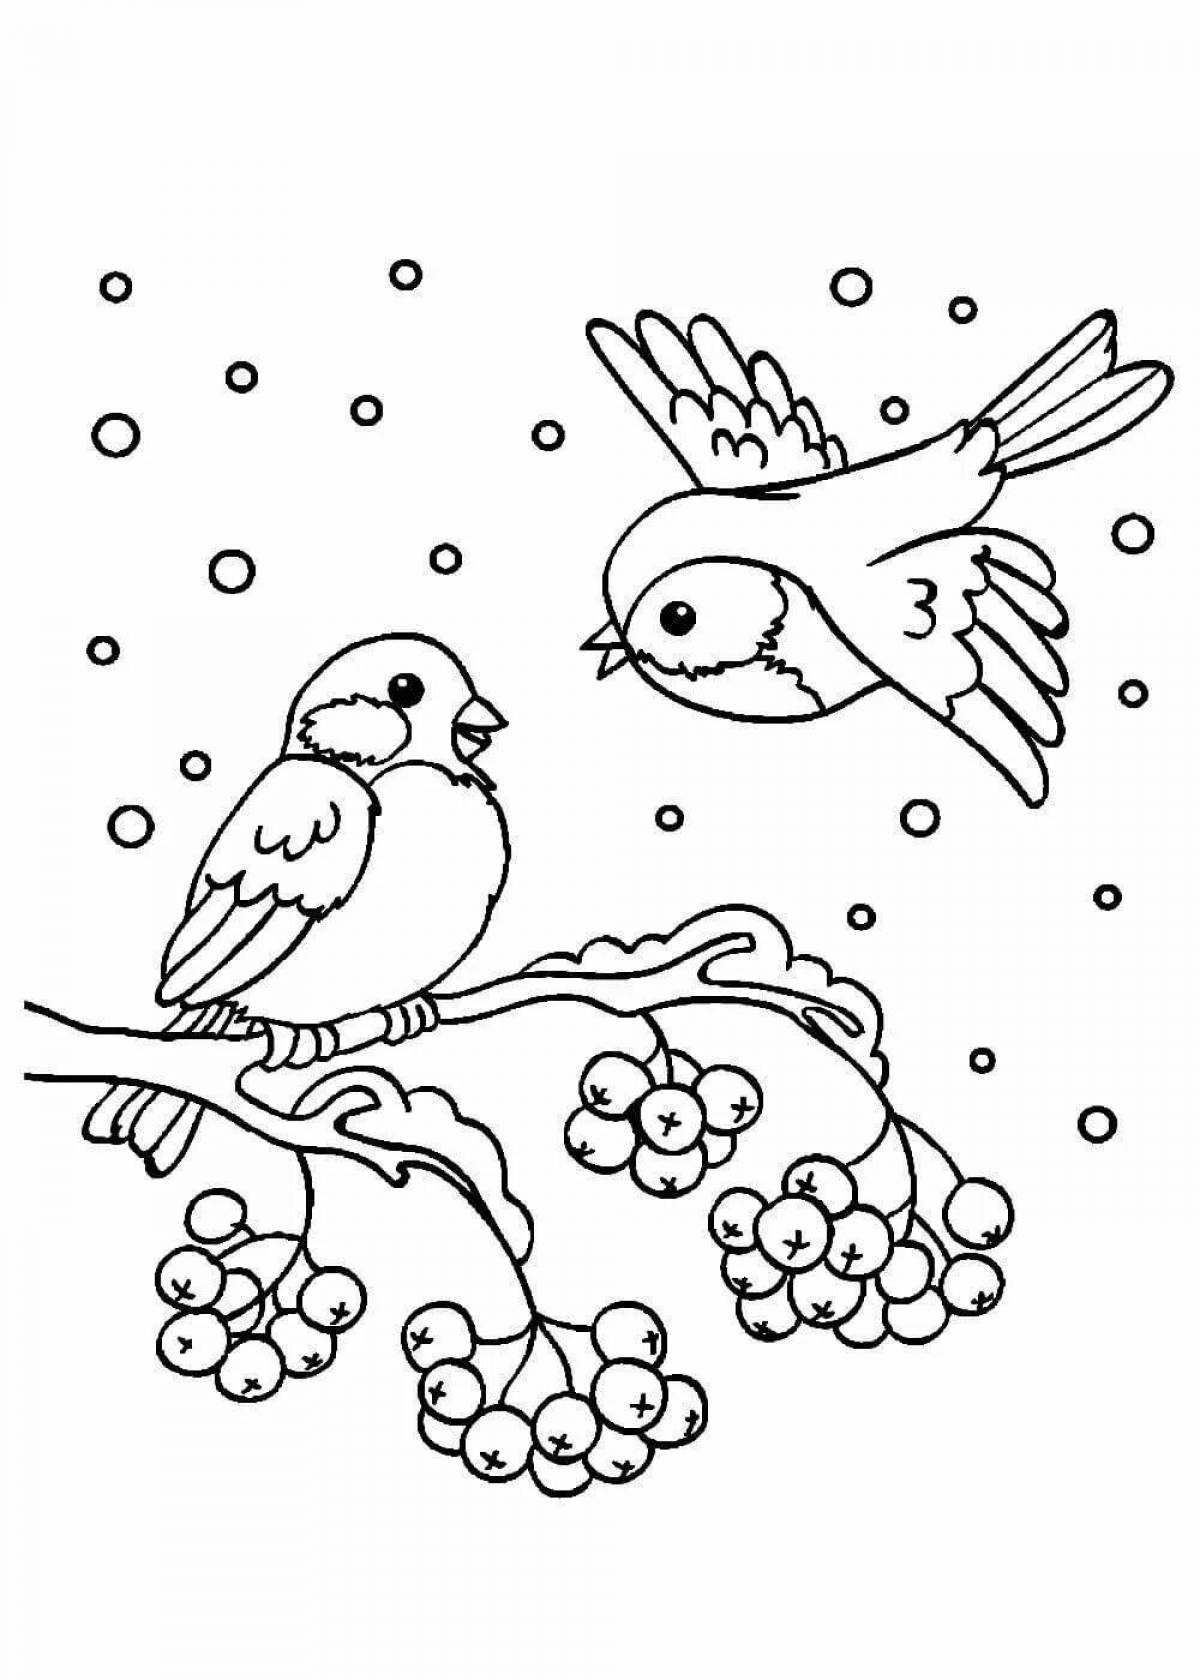 Игривый снегирь рисует на ветке рябины